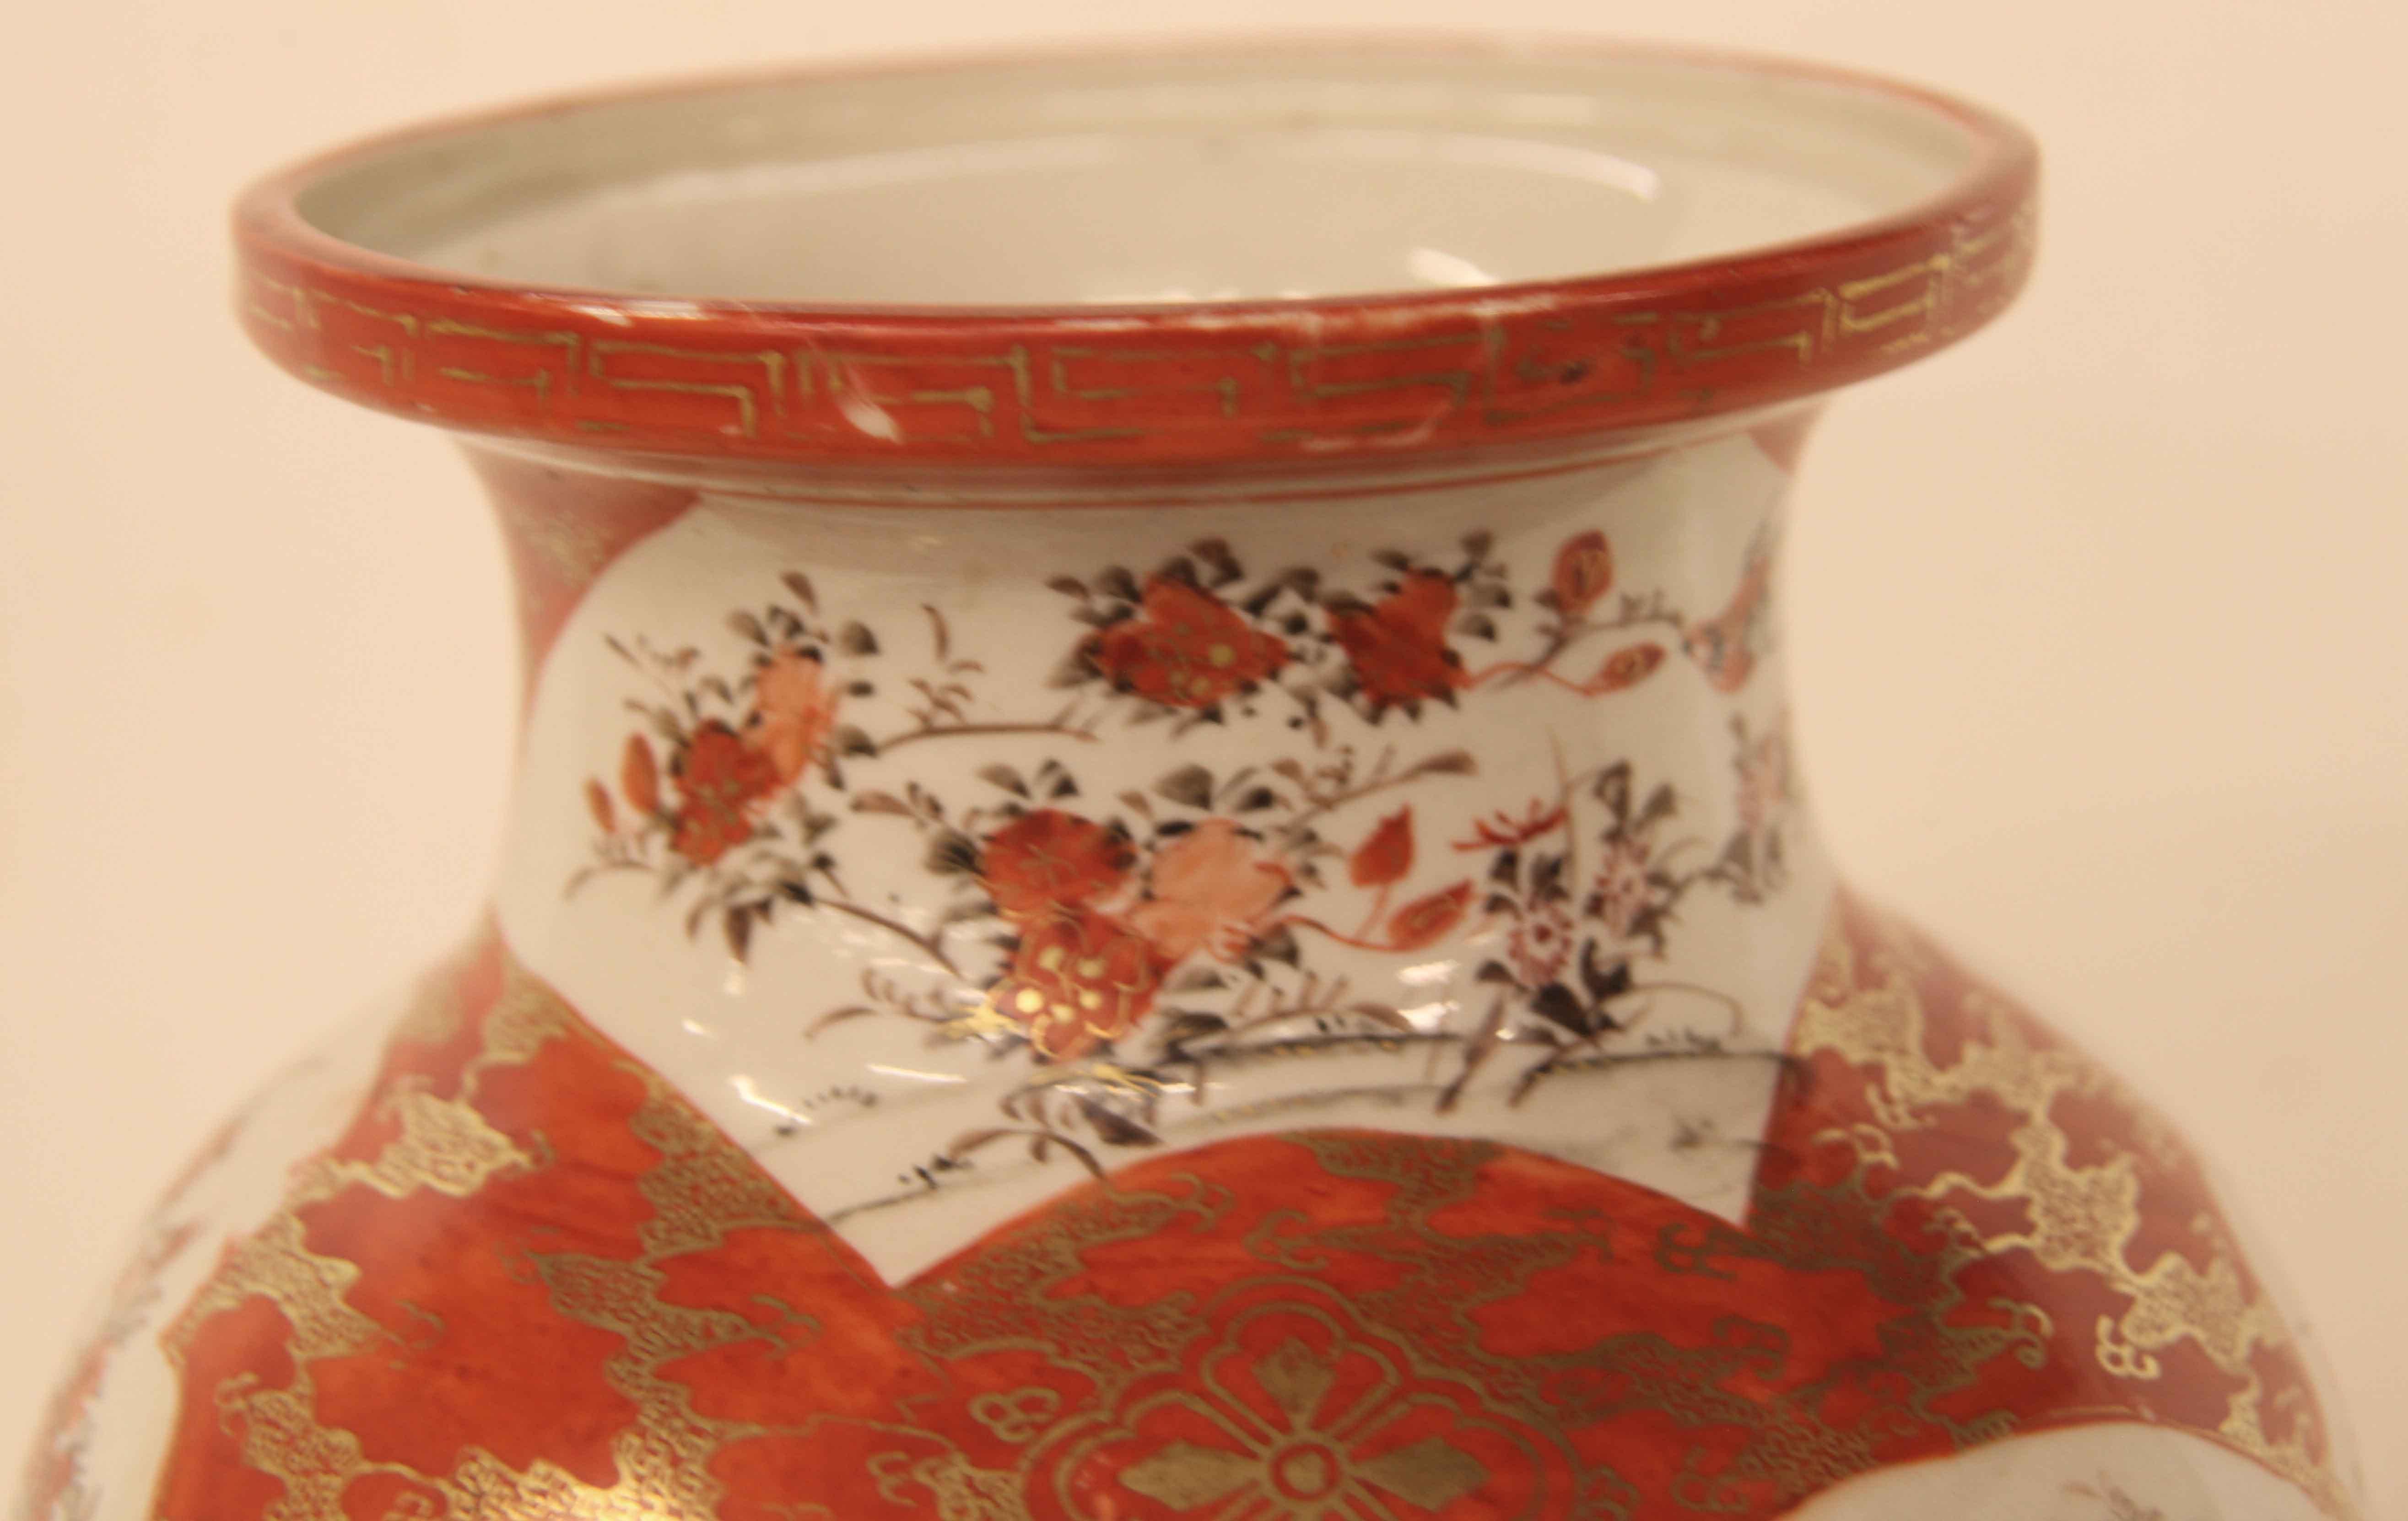 Vase japonais Kutani, avec un motif de clé grecque sur le pourtour,  panneaux de tailles multiples avec de grands et petits oiseaux, des fleurs et des feuillages, excellents décors et rehauts dorés.